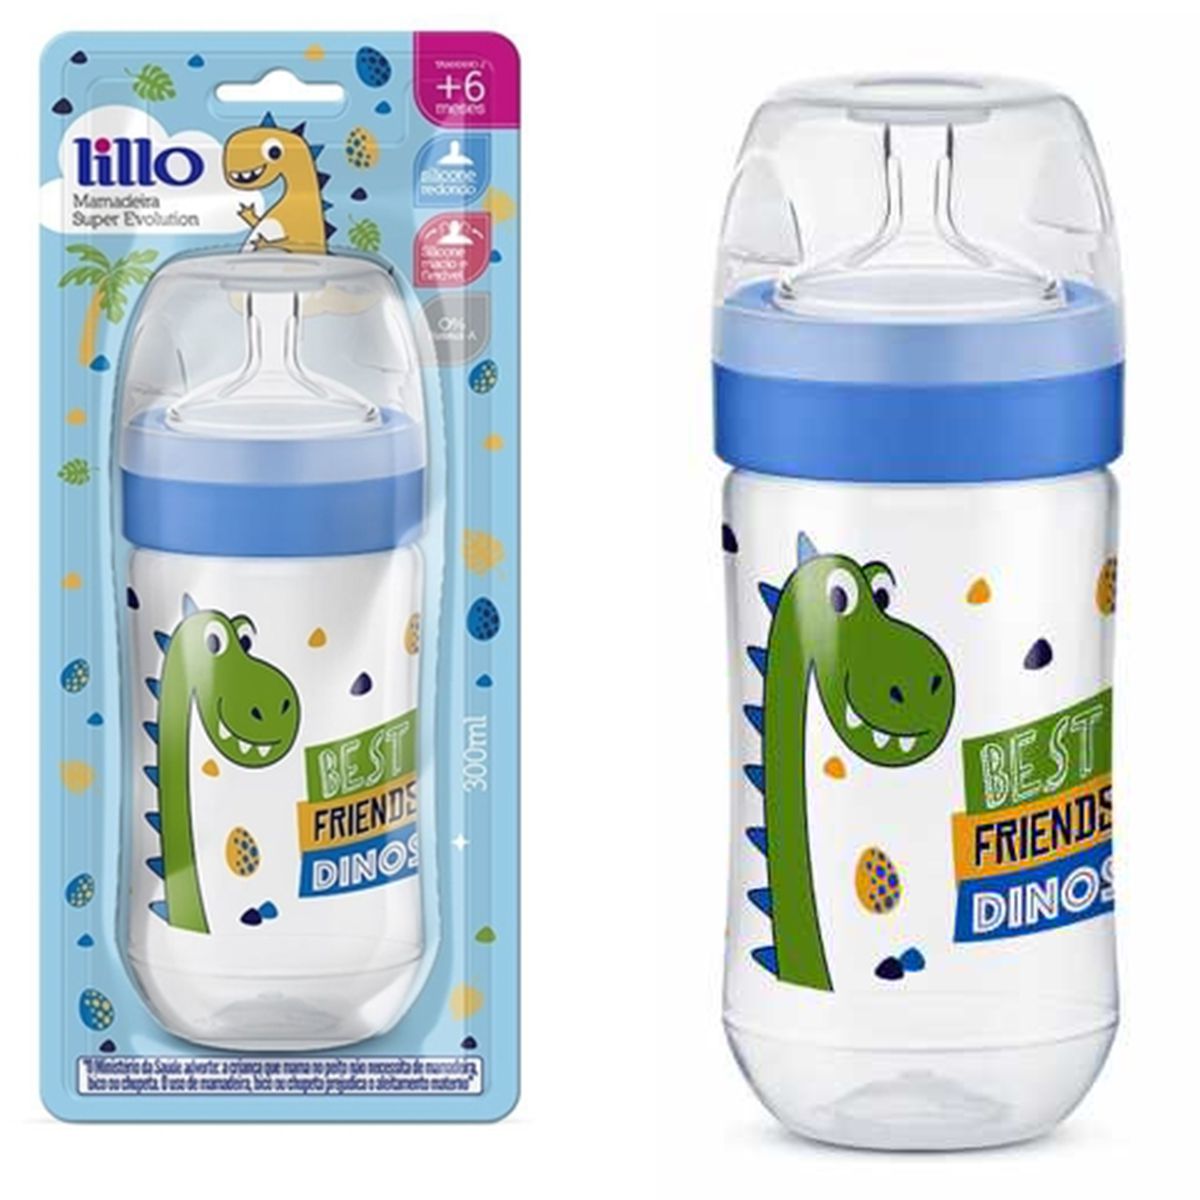 Mamadeira Bebê Bico de Silicone +6 Meses Tam 2 Com Medidor Super Evolution  Lillo Menino - Baby&Kids